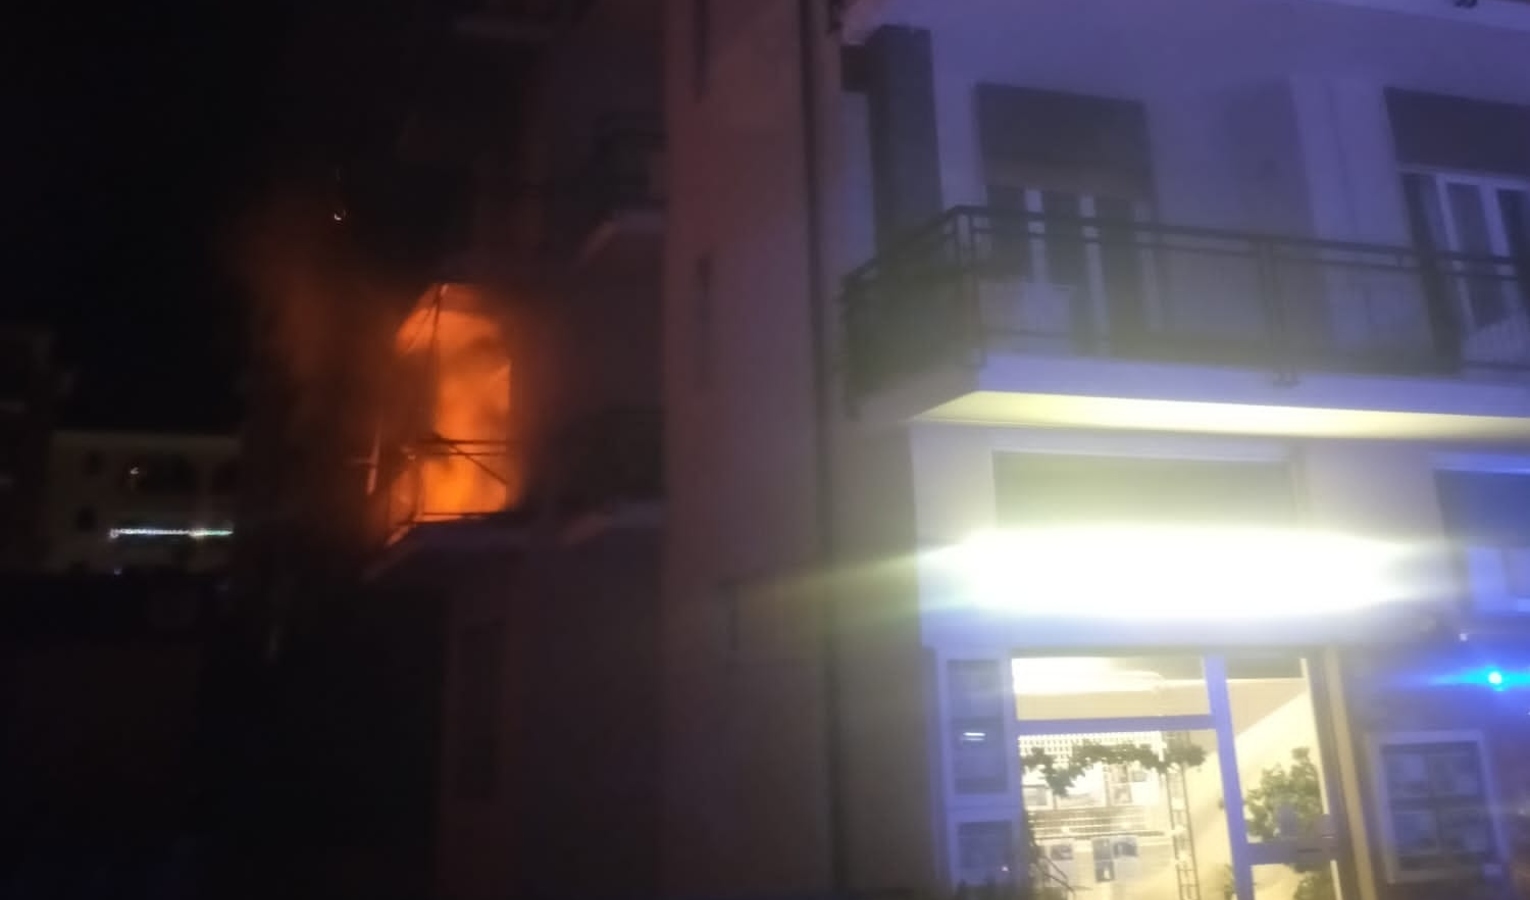 Incendio in abitazione, anziana salvata dal vicino: entrambi intossicati